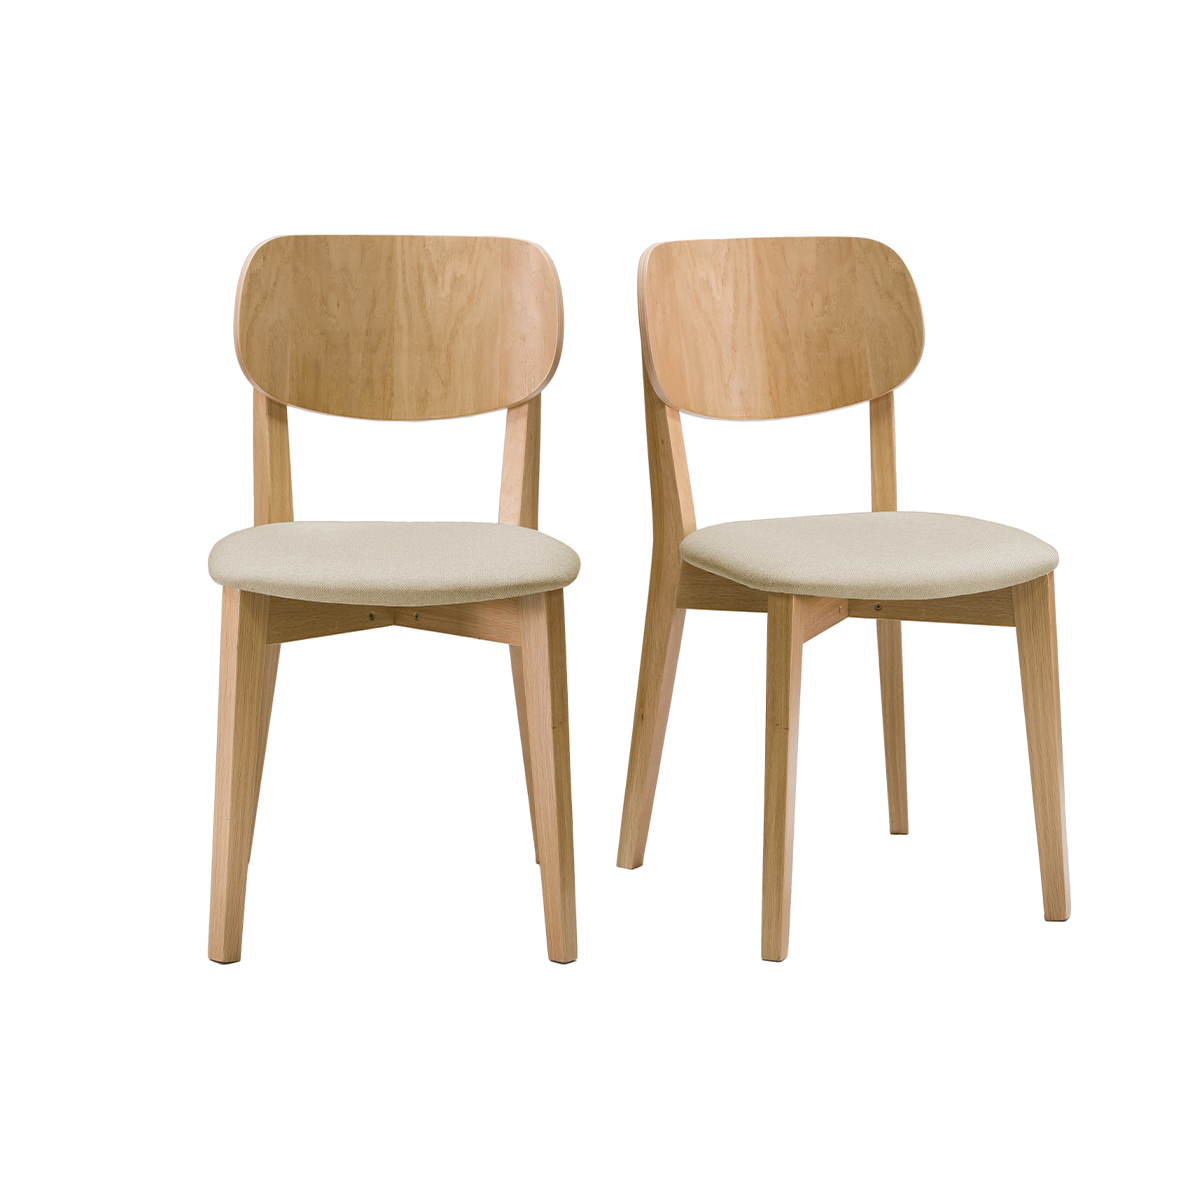 Chaises vintage en bois clair chêne et assise en tissu beige (lot de 2) LUCIA